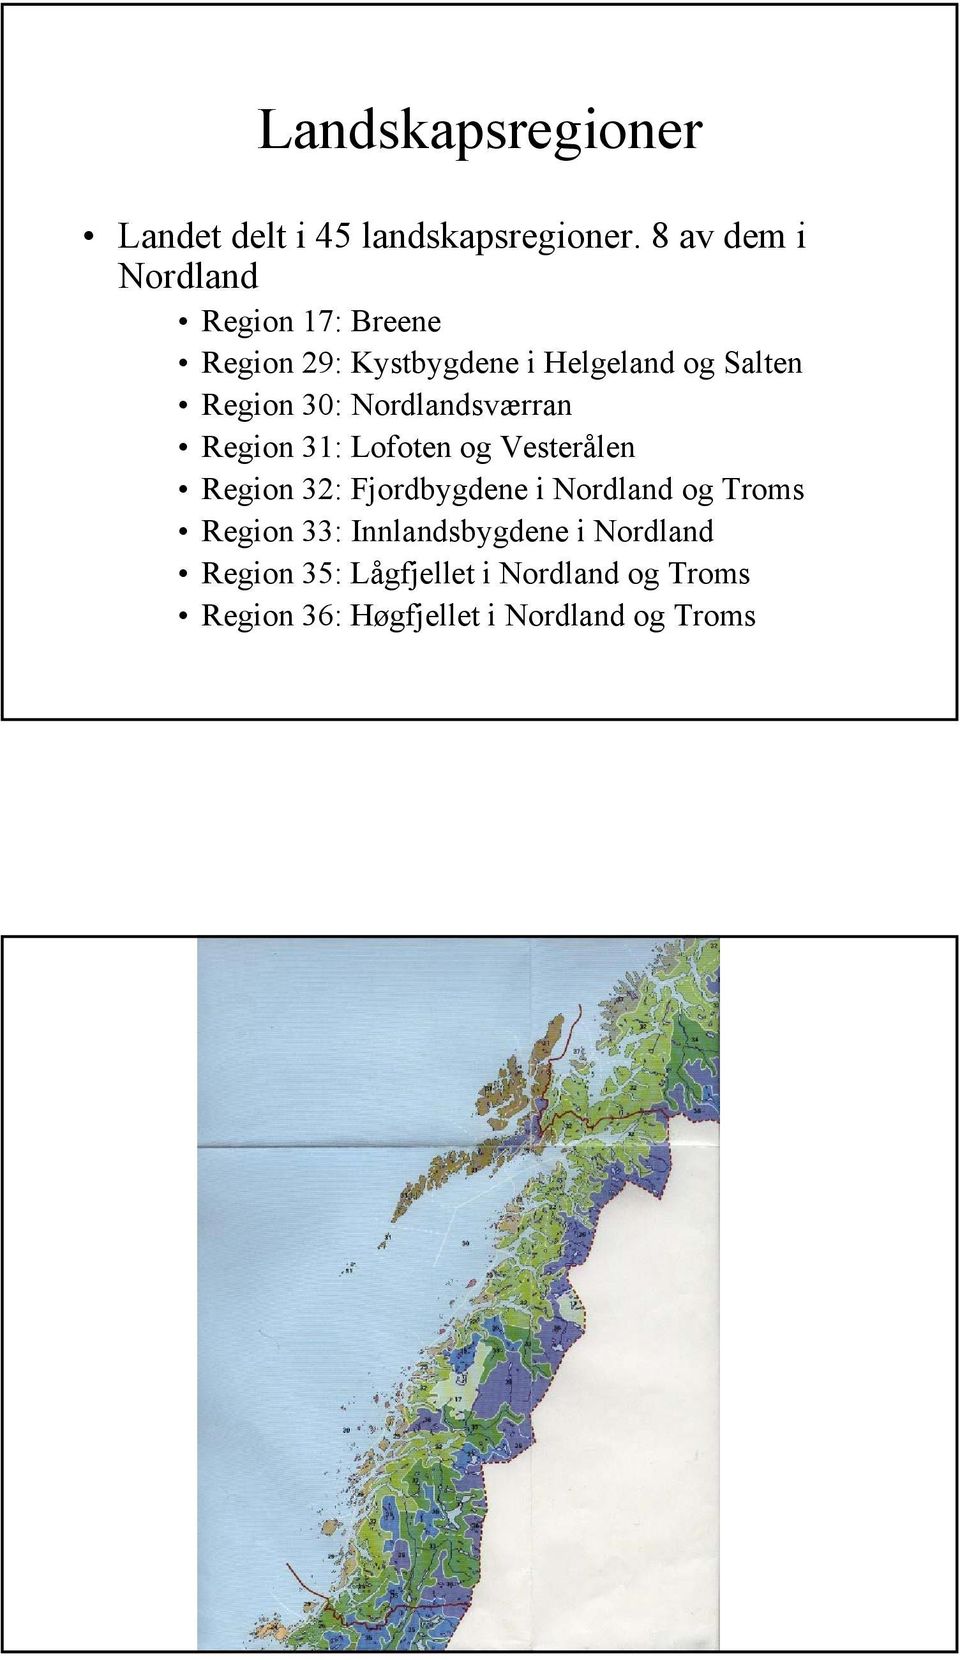 30: Nordlandsværran Region 31: Lofoten og Vesterålen Region 32: Fjordbygdene i Nordland og